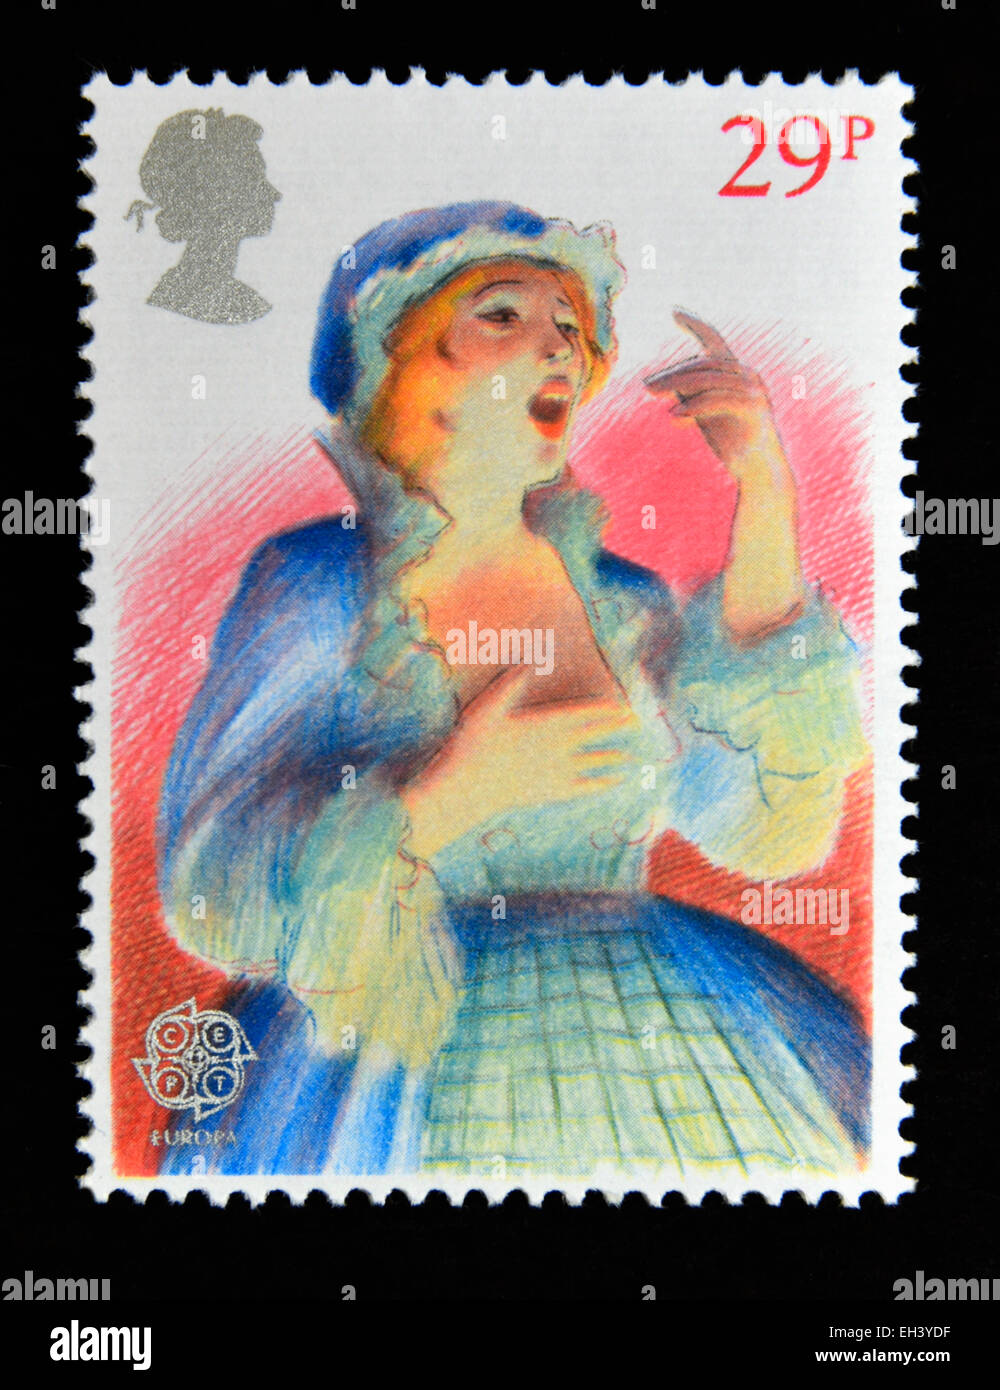 Briefmarke. Great Britain. Königin Elizabeth II. 1982. Europa. British Theatre. Opernsänger (Tenor). 29p. Stockfoto